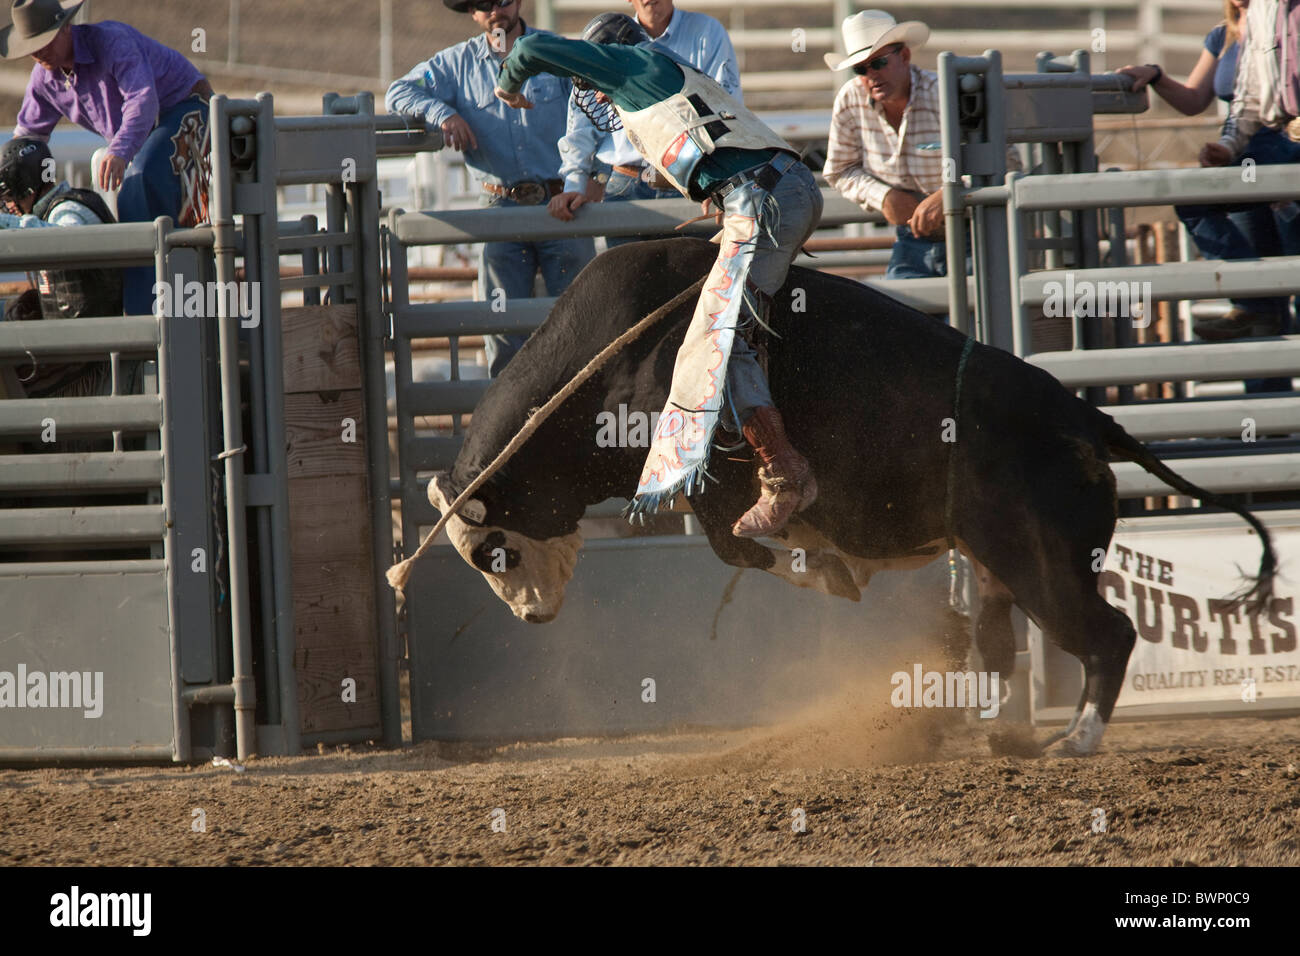 SAN DIMAS, CA - 2 ottobre: Cowboy Josh Daries compete nel toro di equitazione evento presso il San Dimas Rodeo il 2 ottobre 2010. Foto Stock